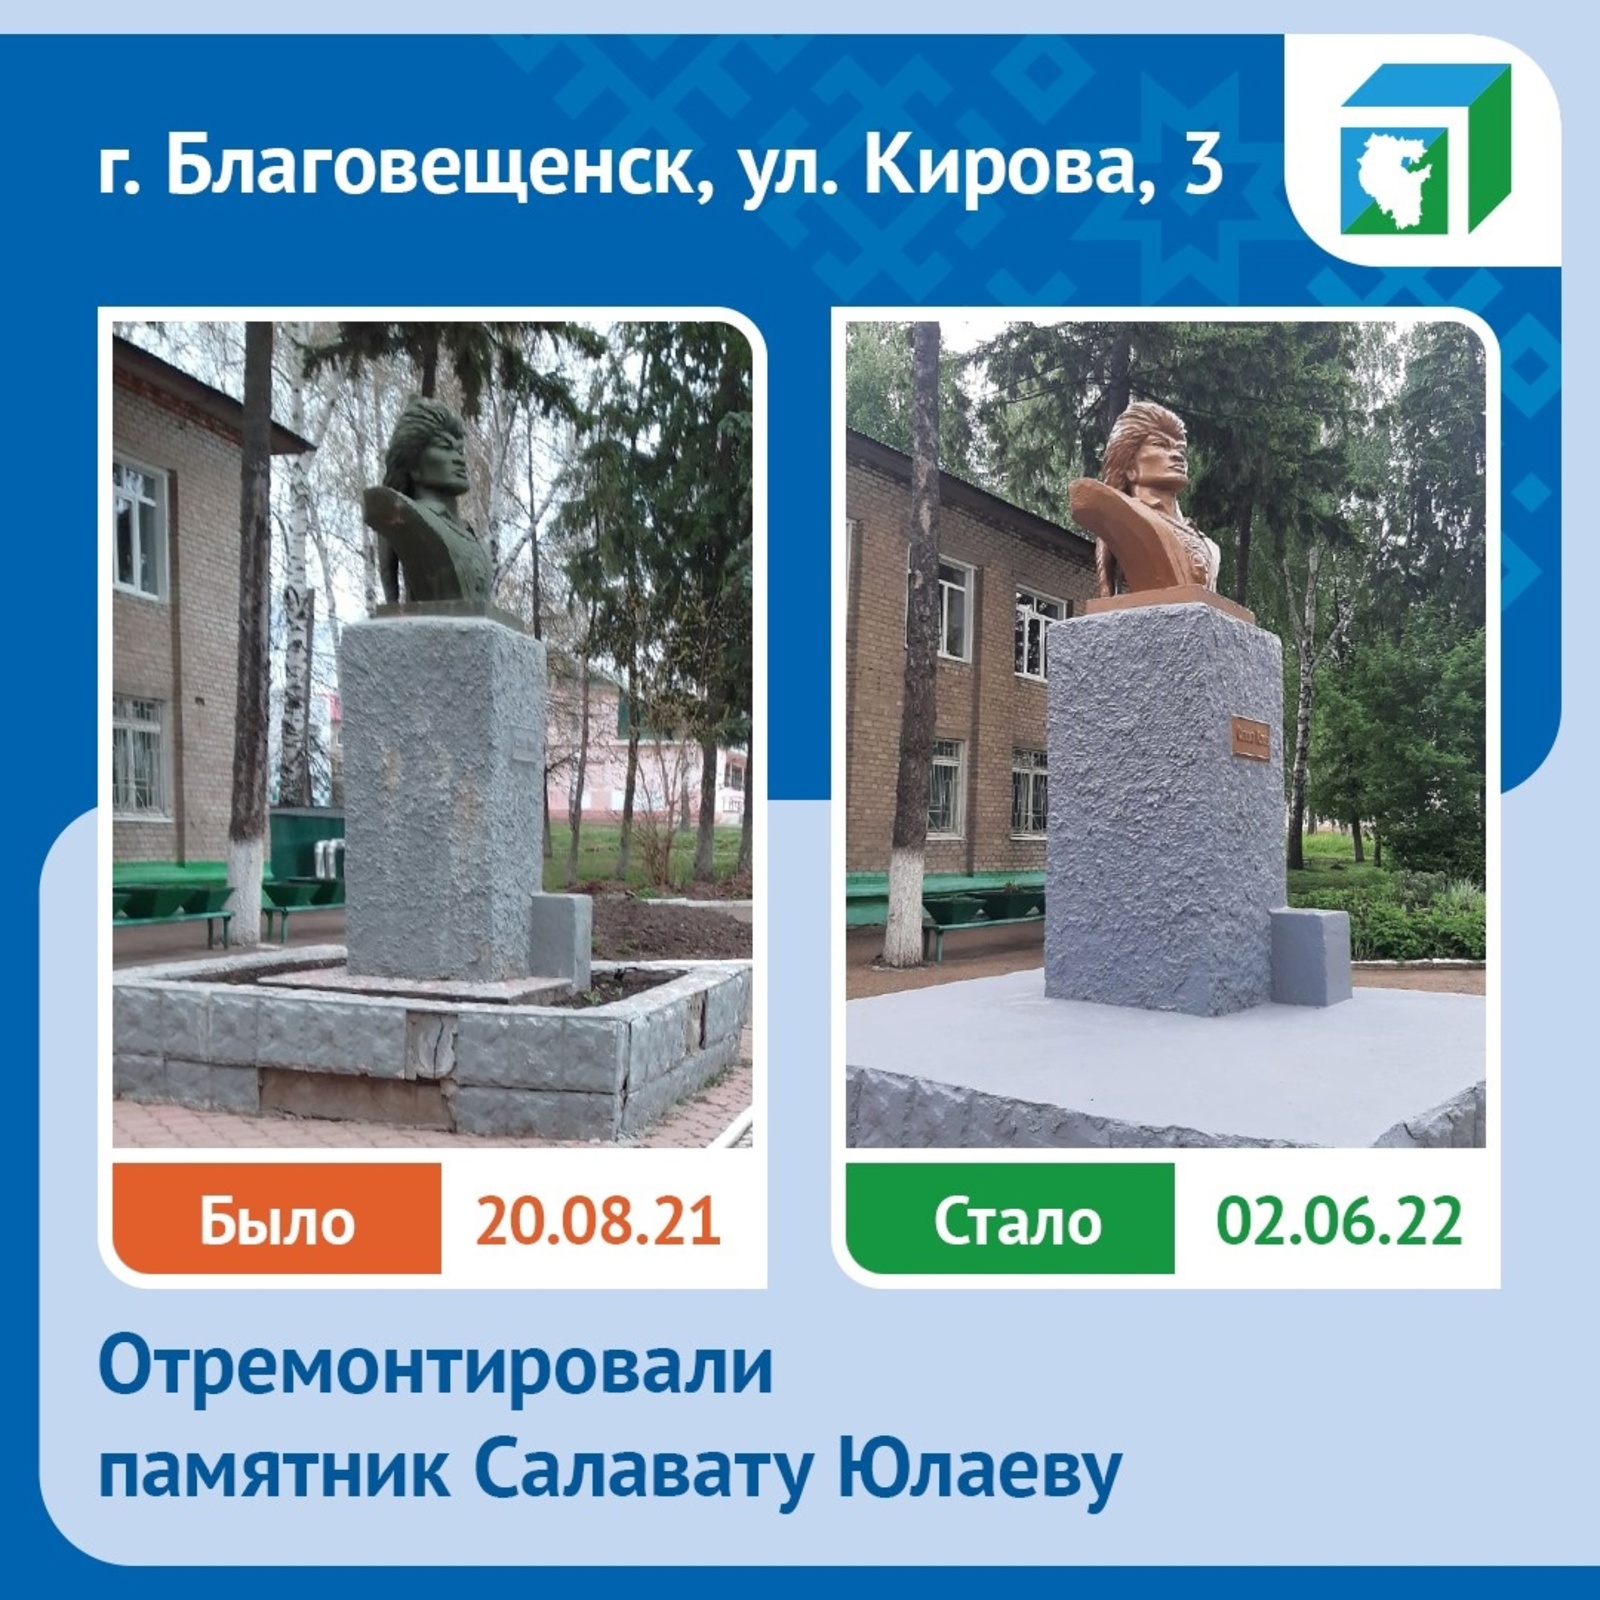 В Благовещенске отремонтировали памятник Салавату Юлаеву